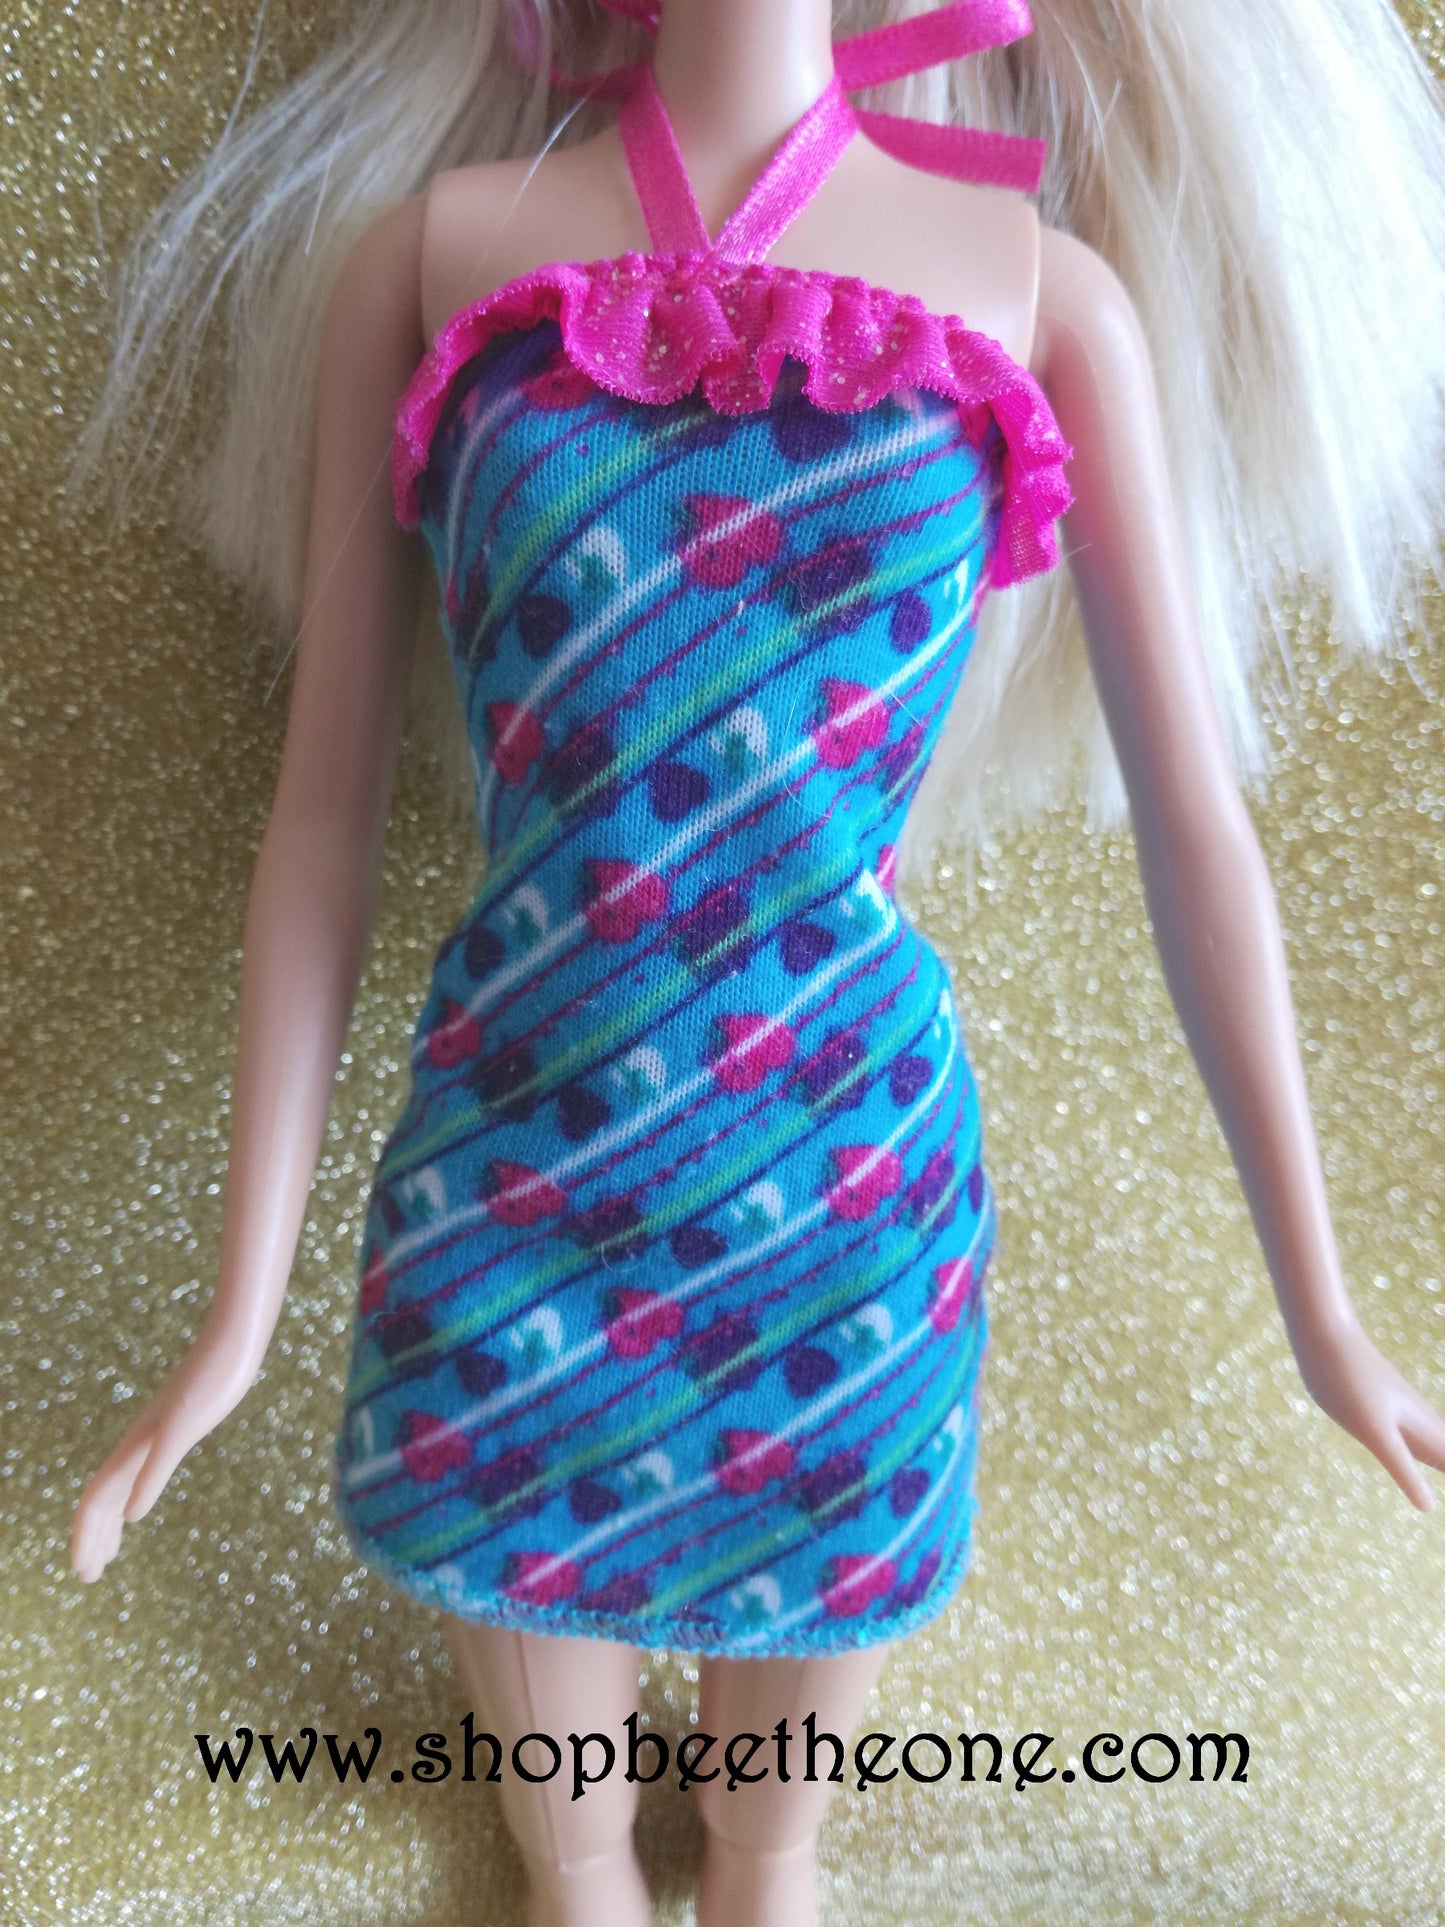 Barbie Fab Life et Glam Bike - Exclusivité Target - Mattel 2013 - Poupée - Vêtement